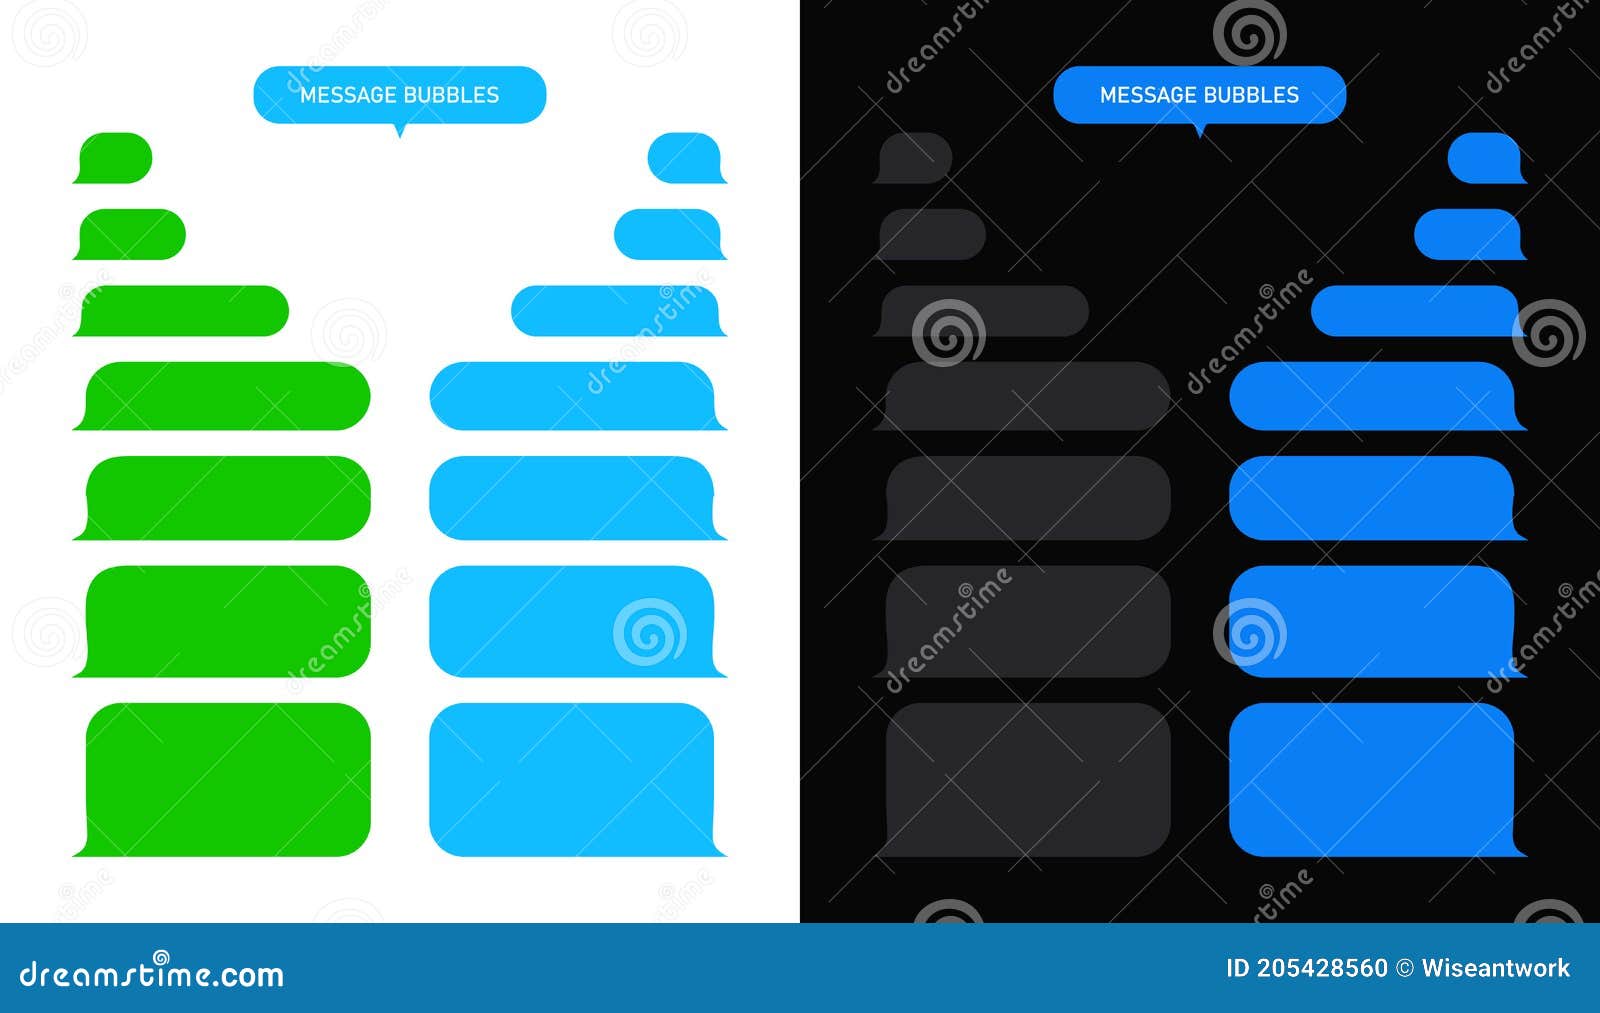 Message Bubble: Tạo điểm nhấn cho tin nhắn của bạn với các lựa chọn về hình dáng, màu sắc và bố cục của vỏ hộp tin nhắn. Từ sự đơn giản đế sự phức tạp, những sự lựa chọn tùy chỉnh về lớp phủ võng tin nhắn của bạn sẽ giúp bạn tạo nên một trải nghiệm tin nhắn hoàn toàn khác biệt. Nhấn vào hình ảnh để tham khảo các tùy chọn vỏ hộp tin nhắn.